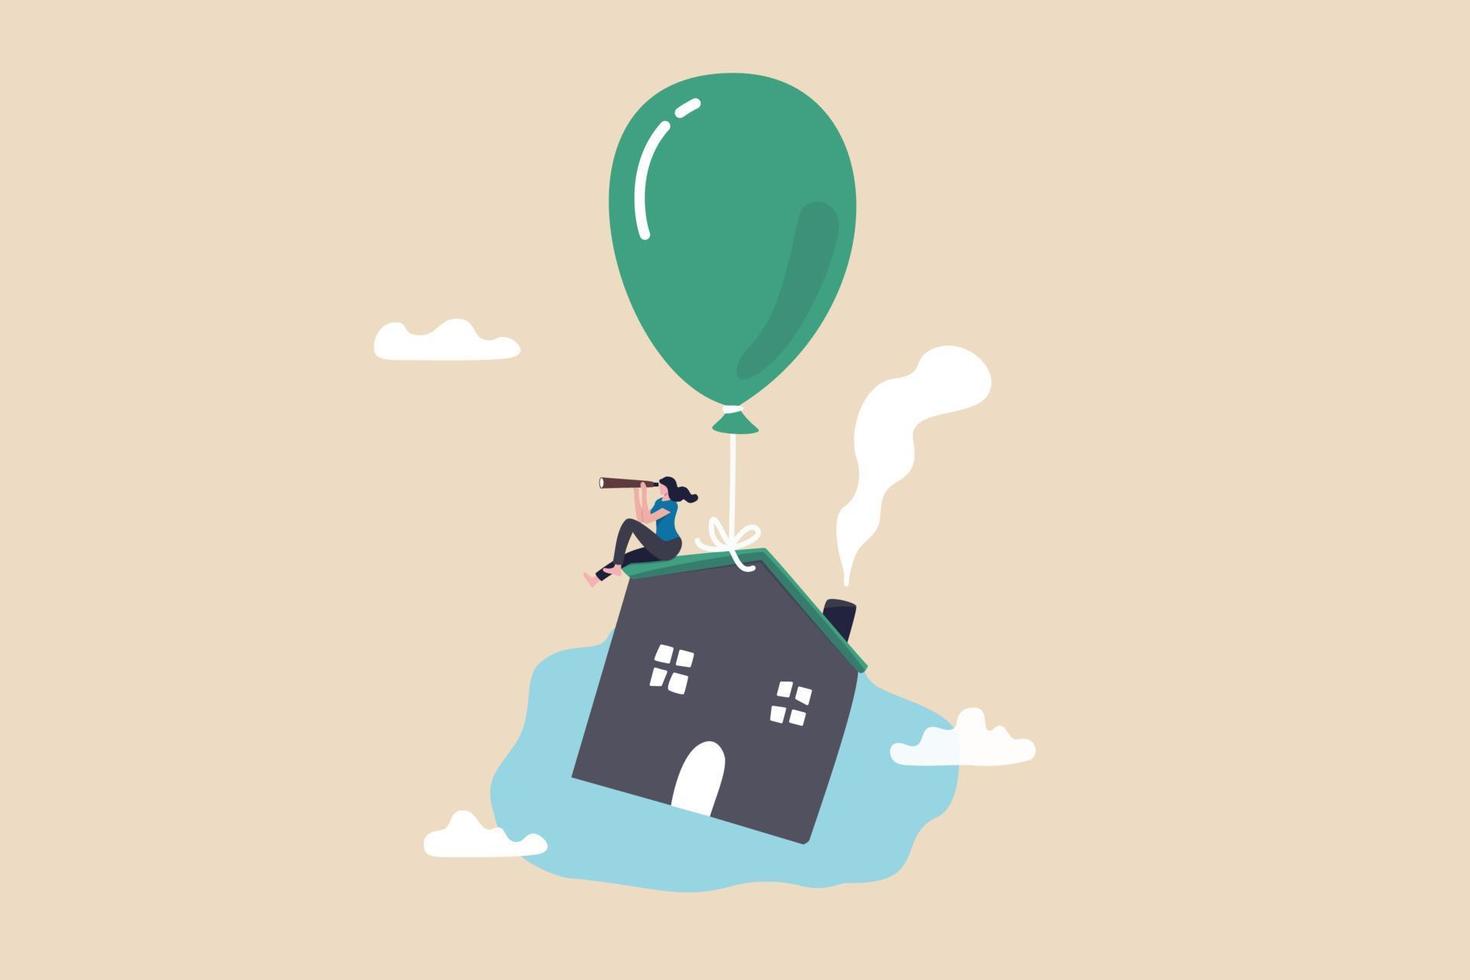 taxa de juros da hipoteca da casa subindo, impacto do empréstimo à habitação da inflação, bolha de preços imobiliários ou conceito de oportunidade de investimento imobiliário, proprietário da casa com telescópio na casa voadora com balão. vetor